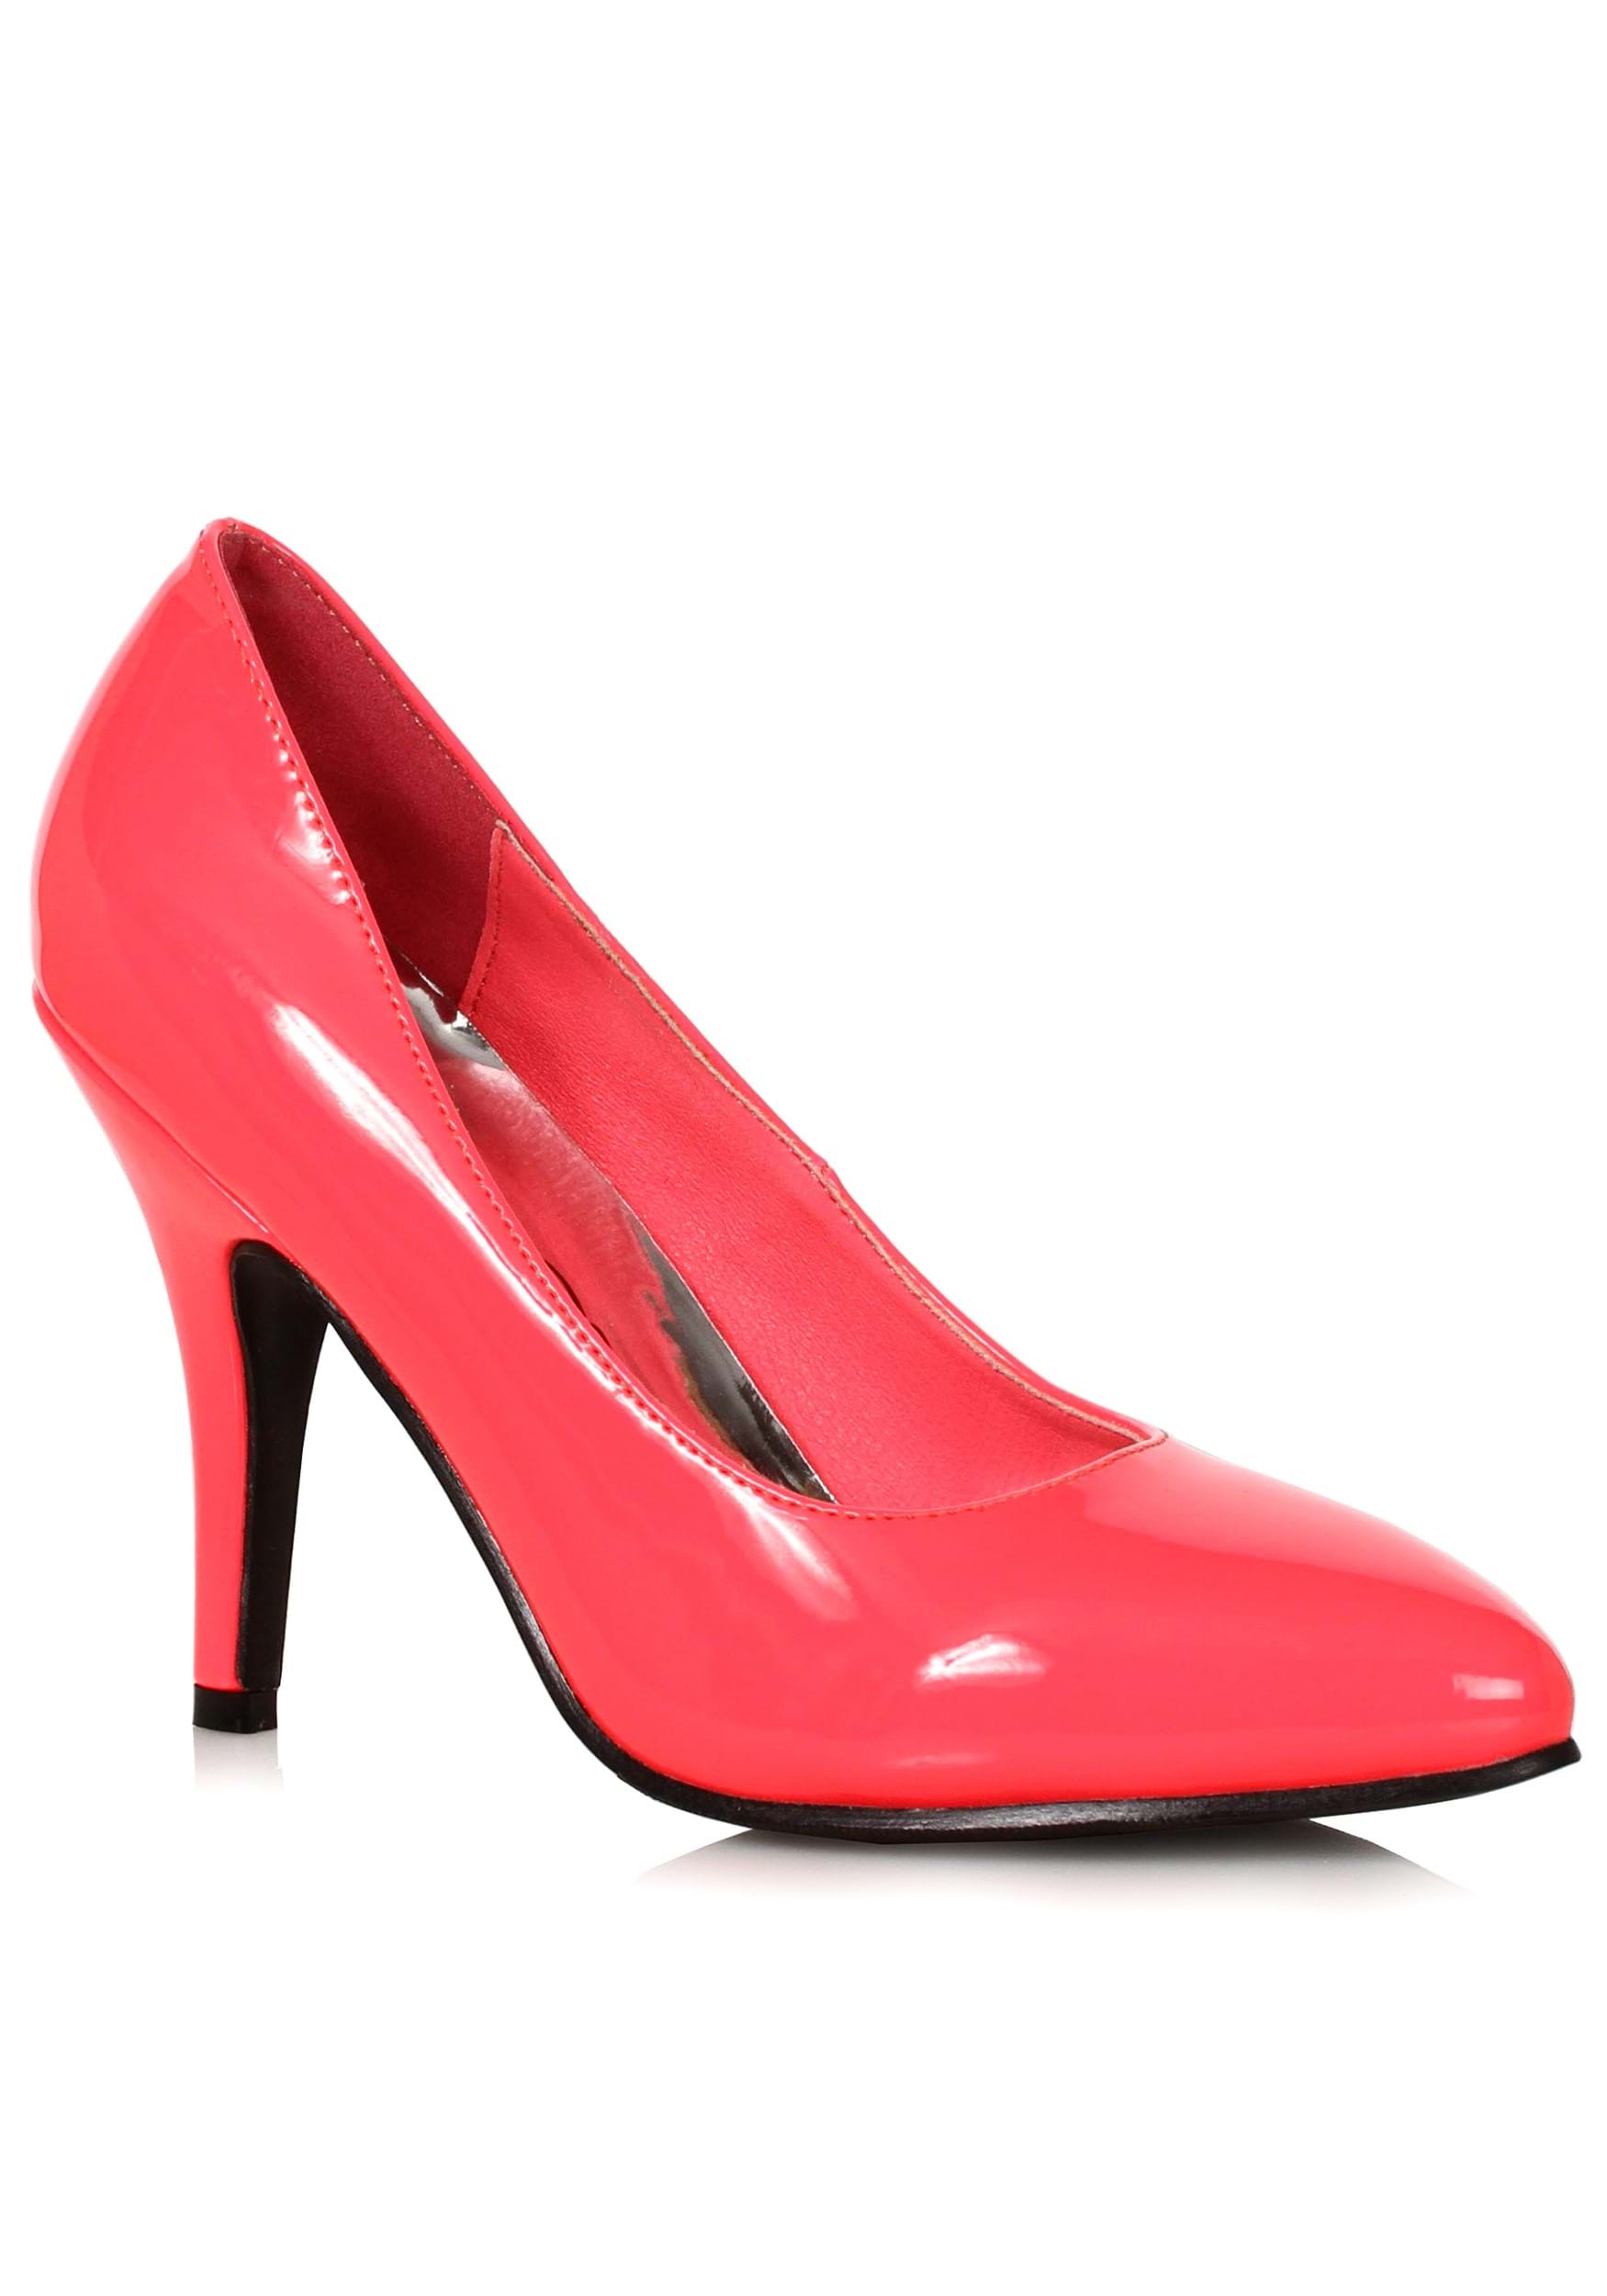 Miss Kg Abbie Pink Neon Court Shoes UK 5 EU 38 Js29 59 for sale online |  eBay